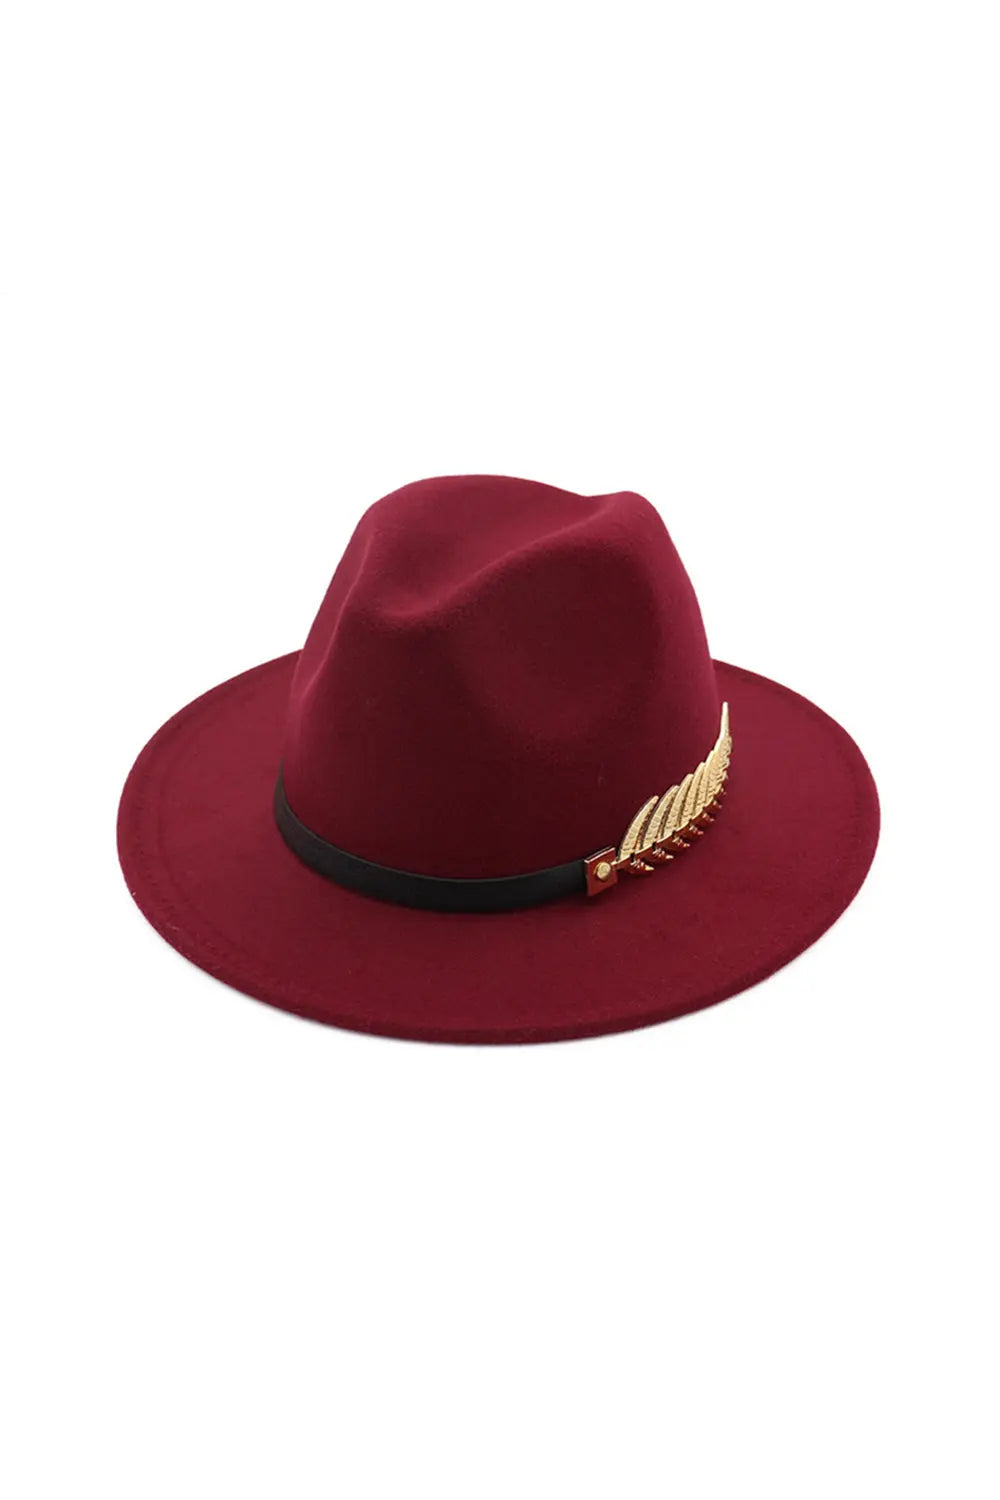 Jazz Hat - Wine Red - Strange Clothes